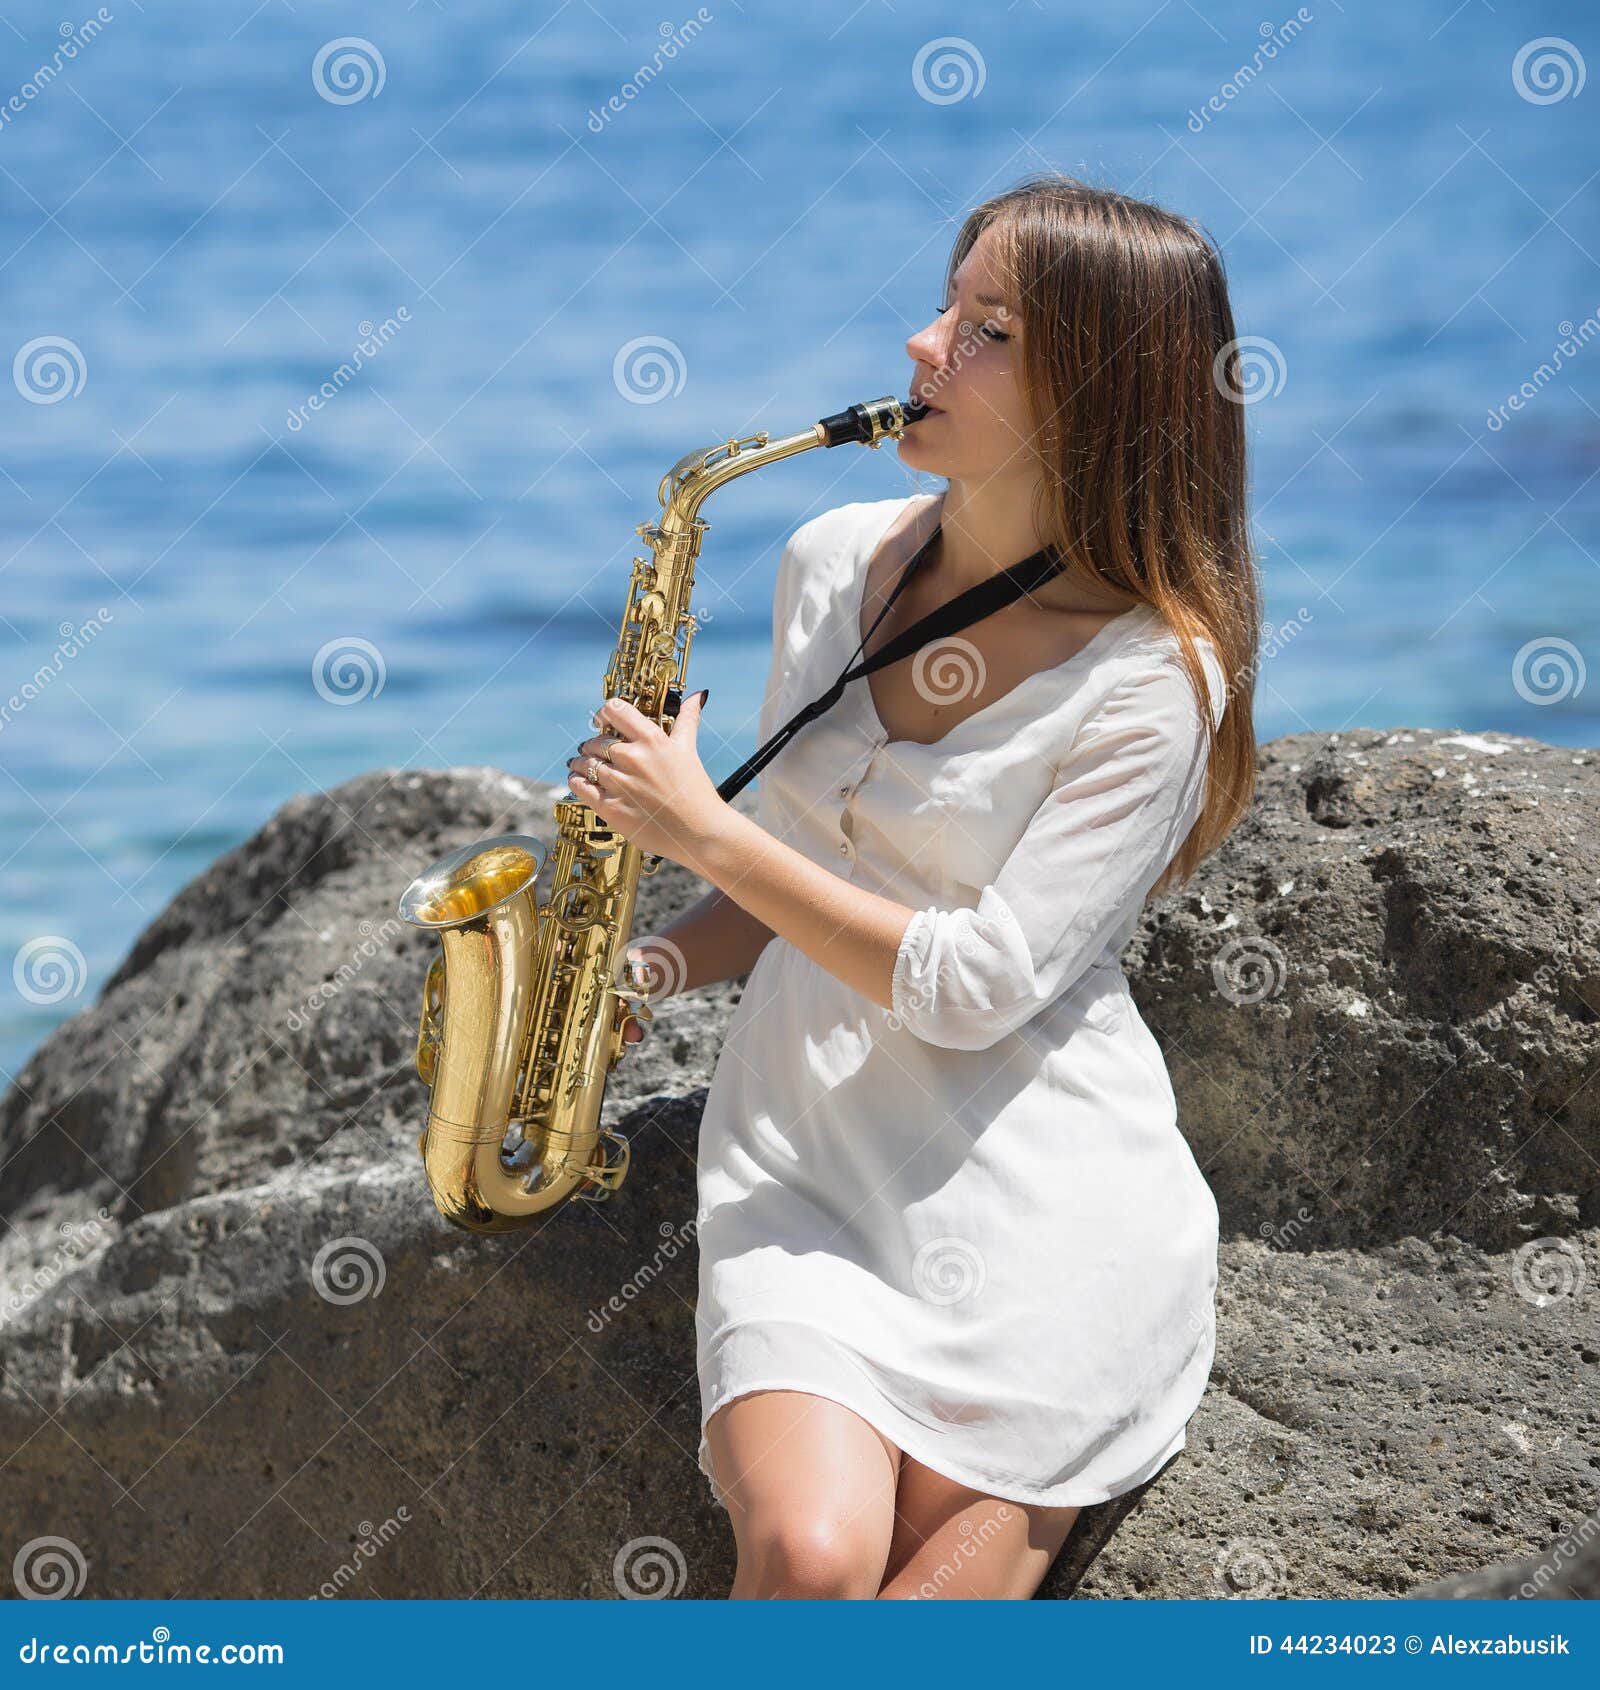 Музыка саксофона играют девушки. Девушка с саксофоном. Девушка с саксофоном на берегу моря. Девушка играет на саксофоне. Саксофонистки море.